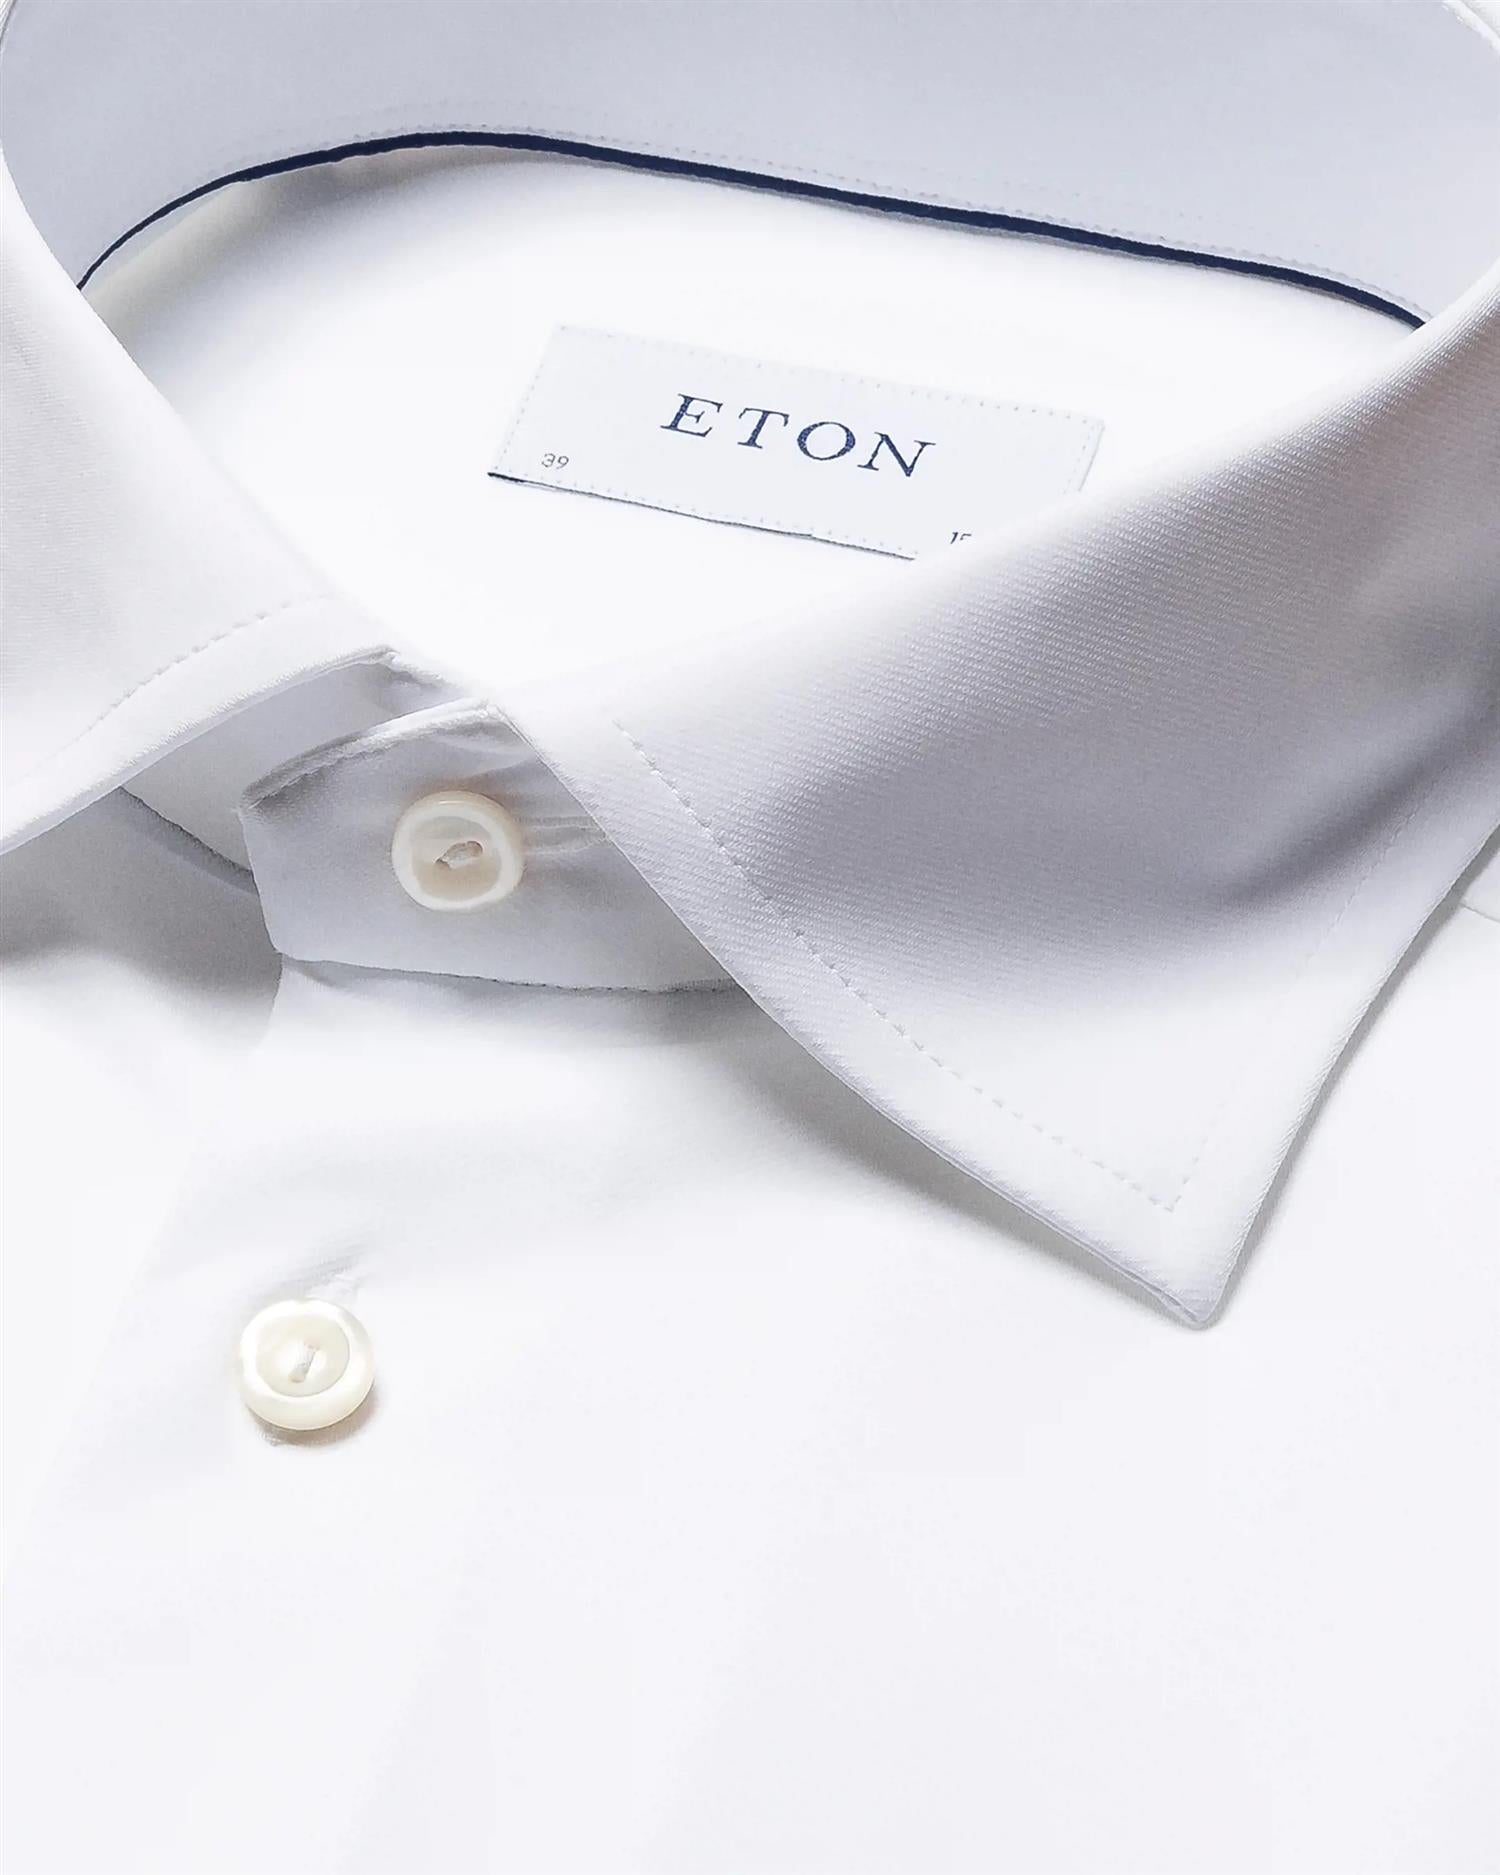 Eton White Four-Way Stretch Shirt Skjorte Hvit